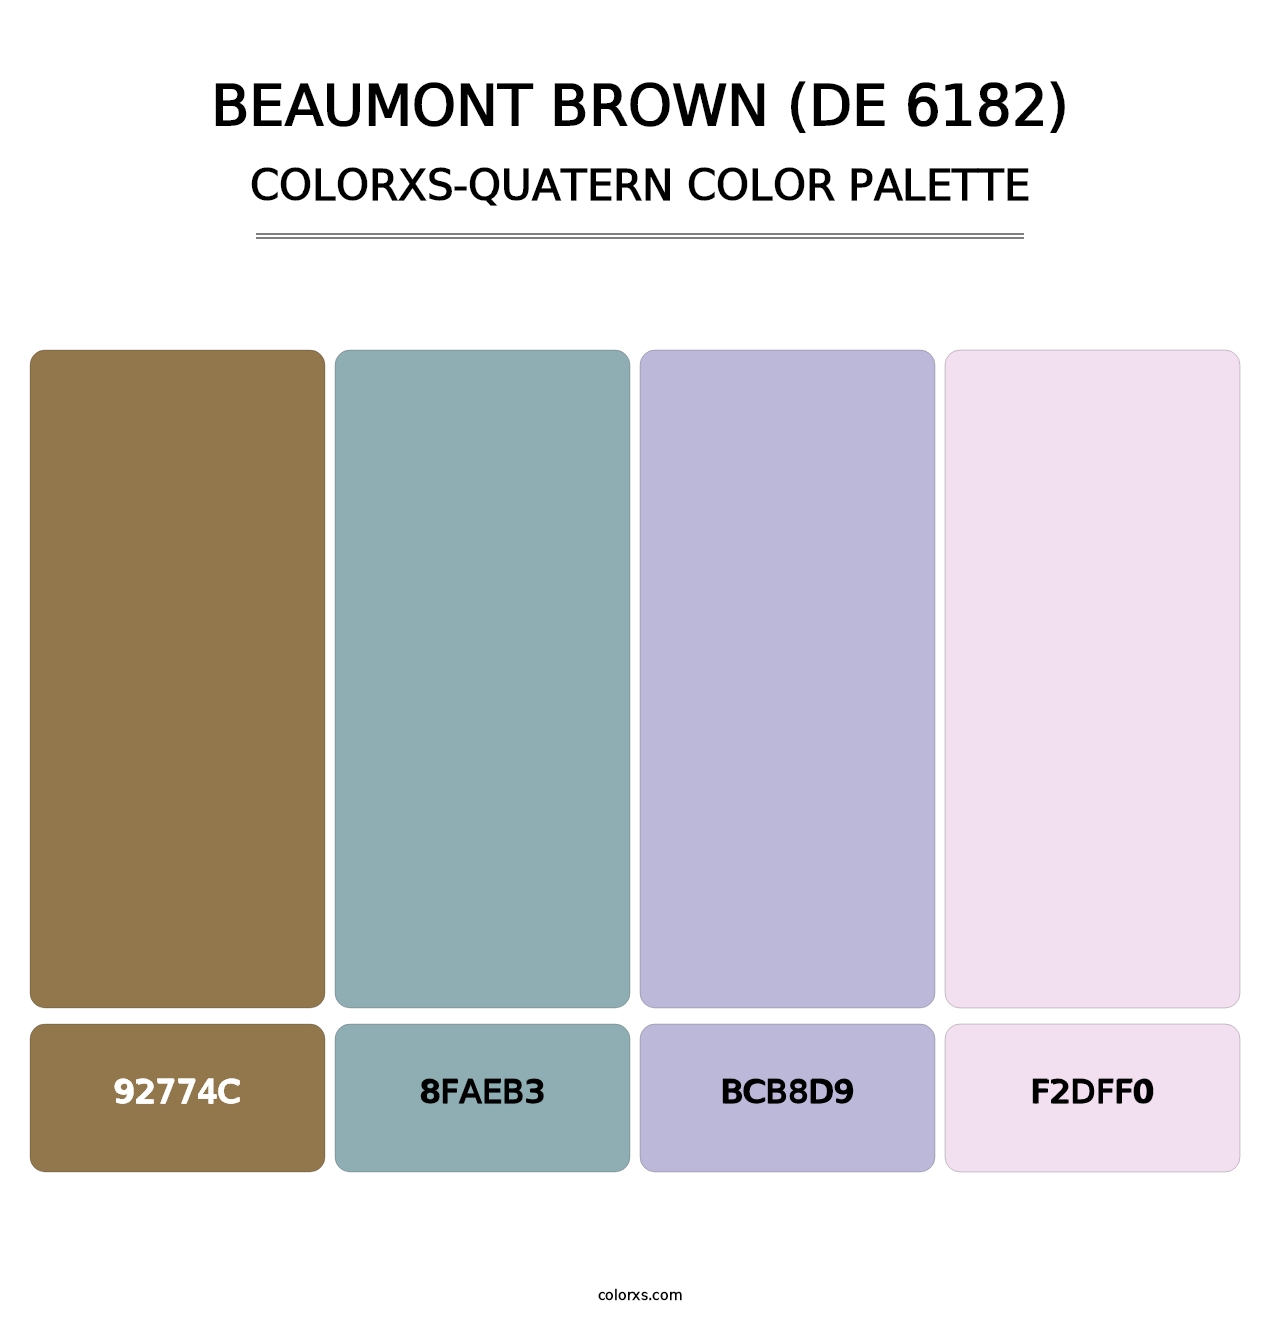 Beaumont Brown (DE 6182) - Colorxs Quatern Palette